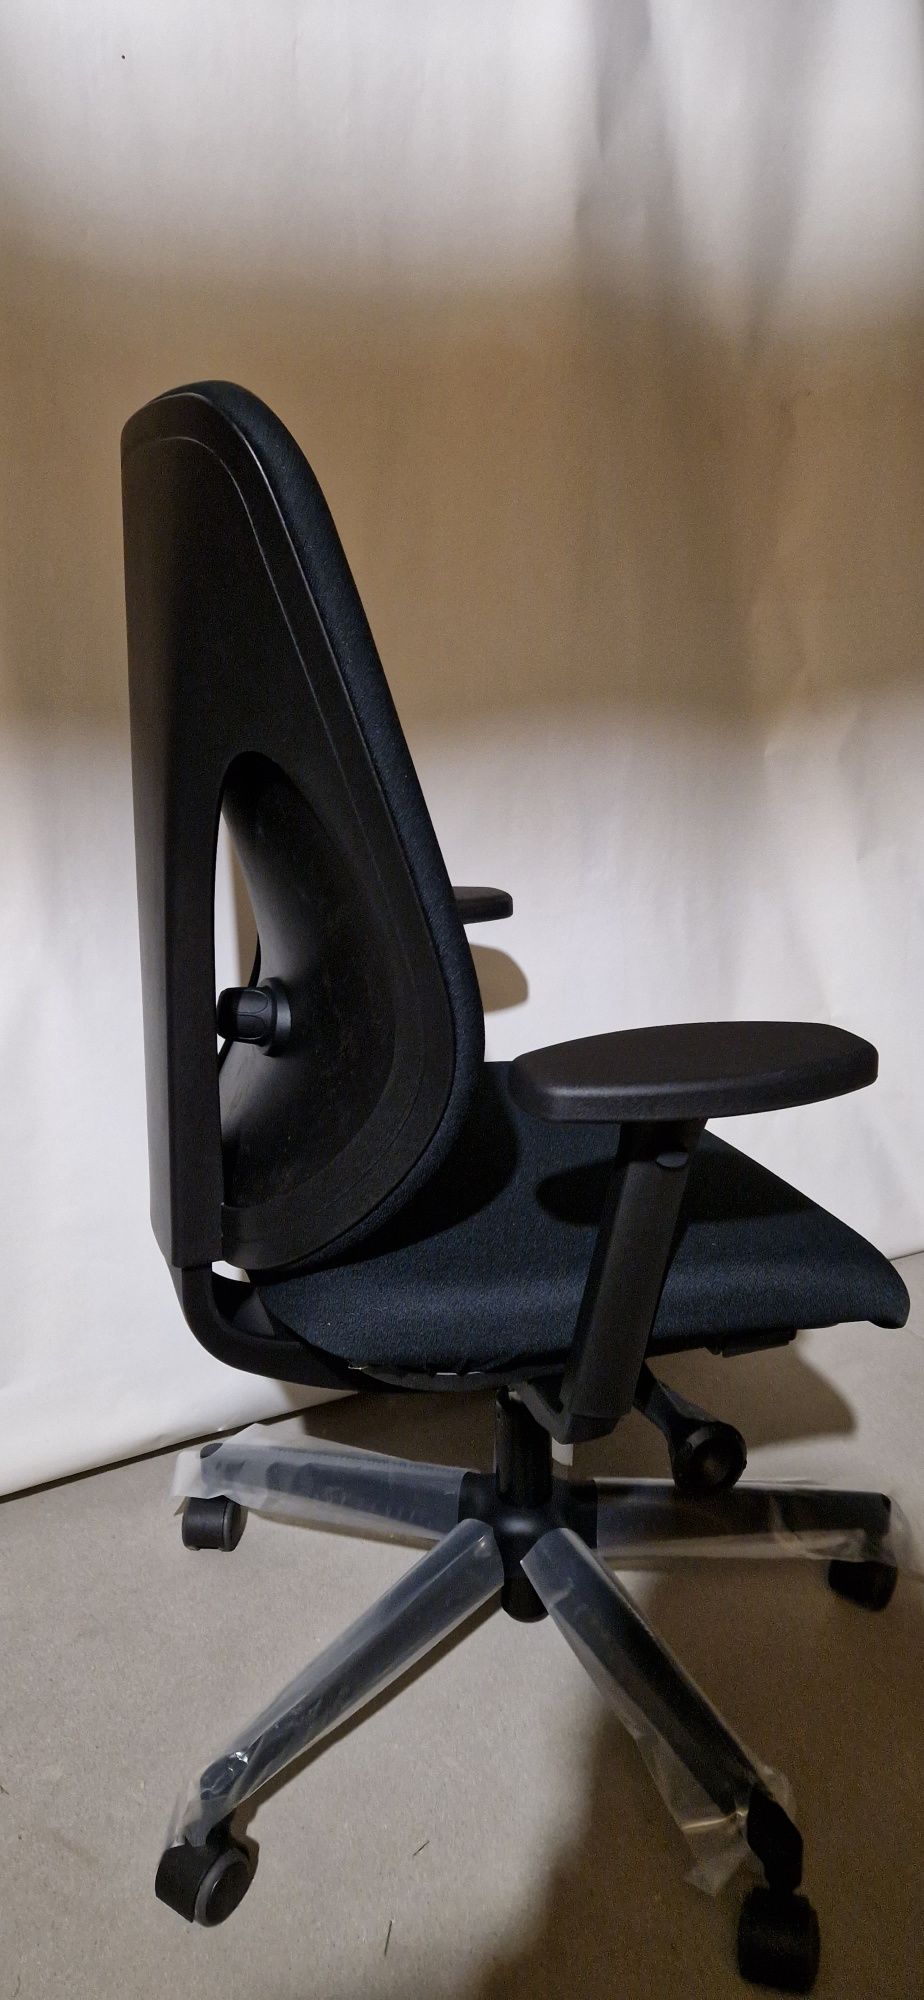 Ergonomiczny Fotel, krzesło biurowe  Giroflex 353. Nowe